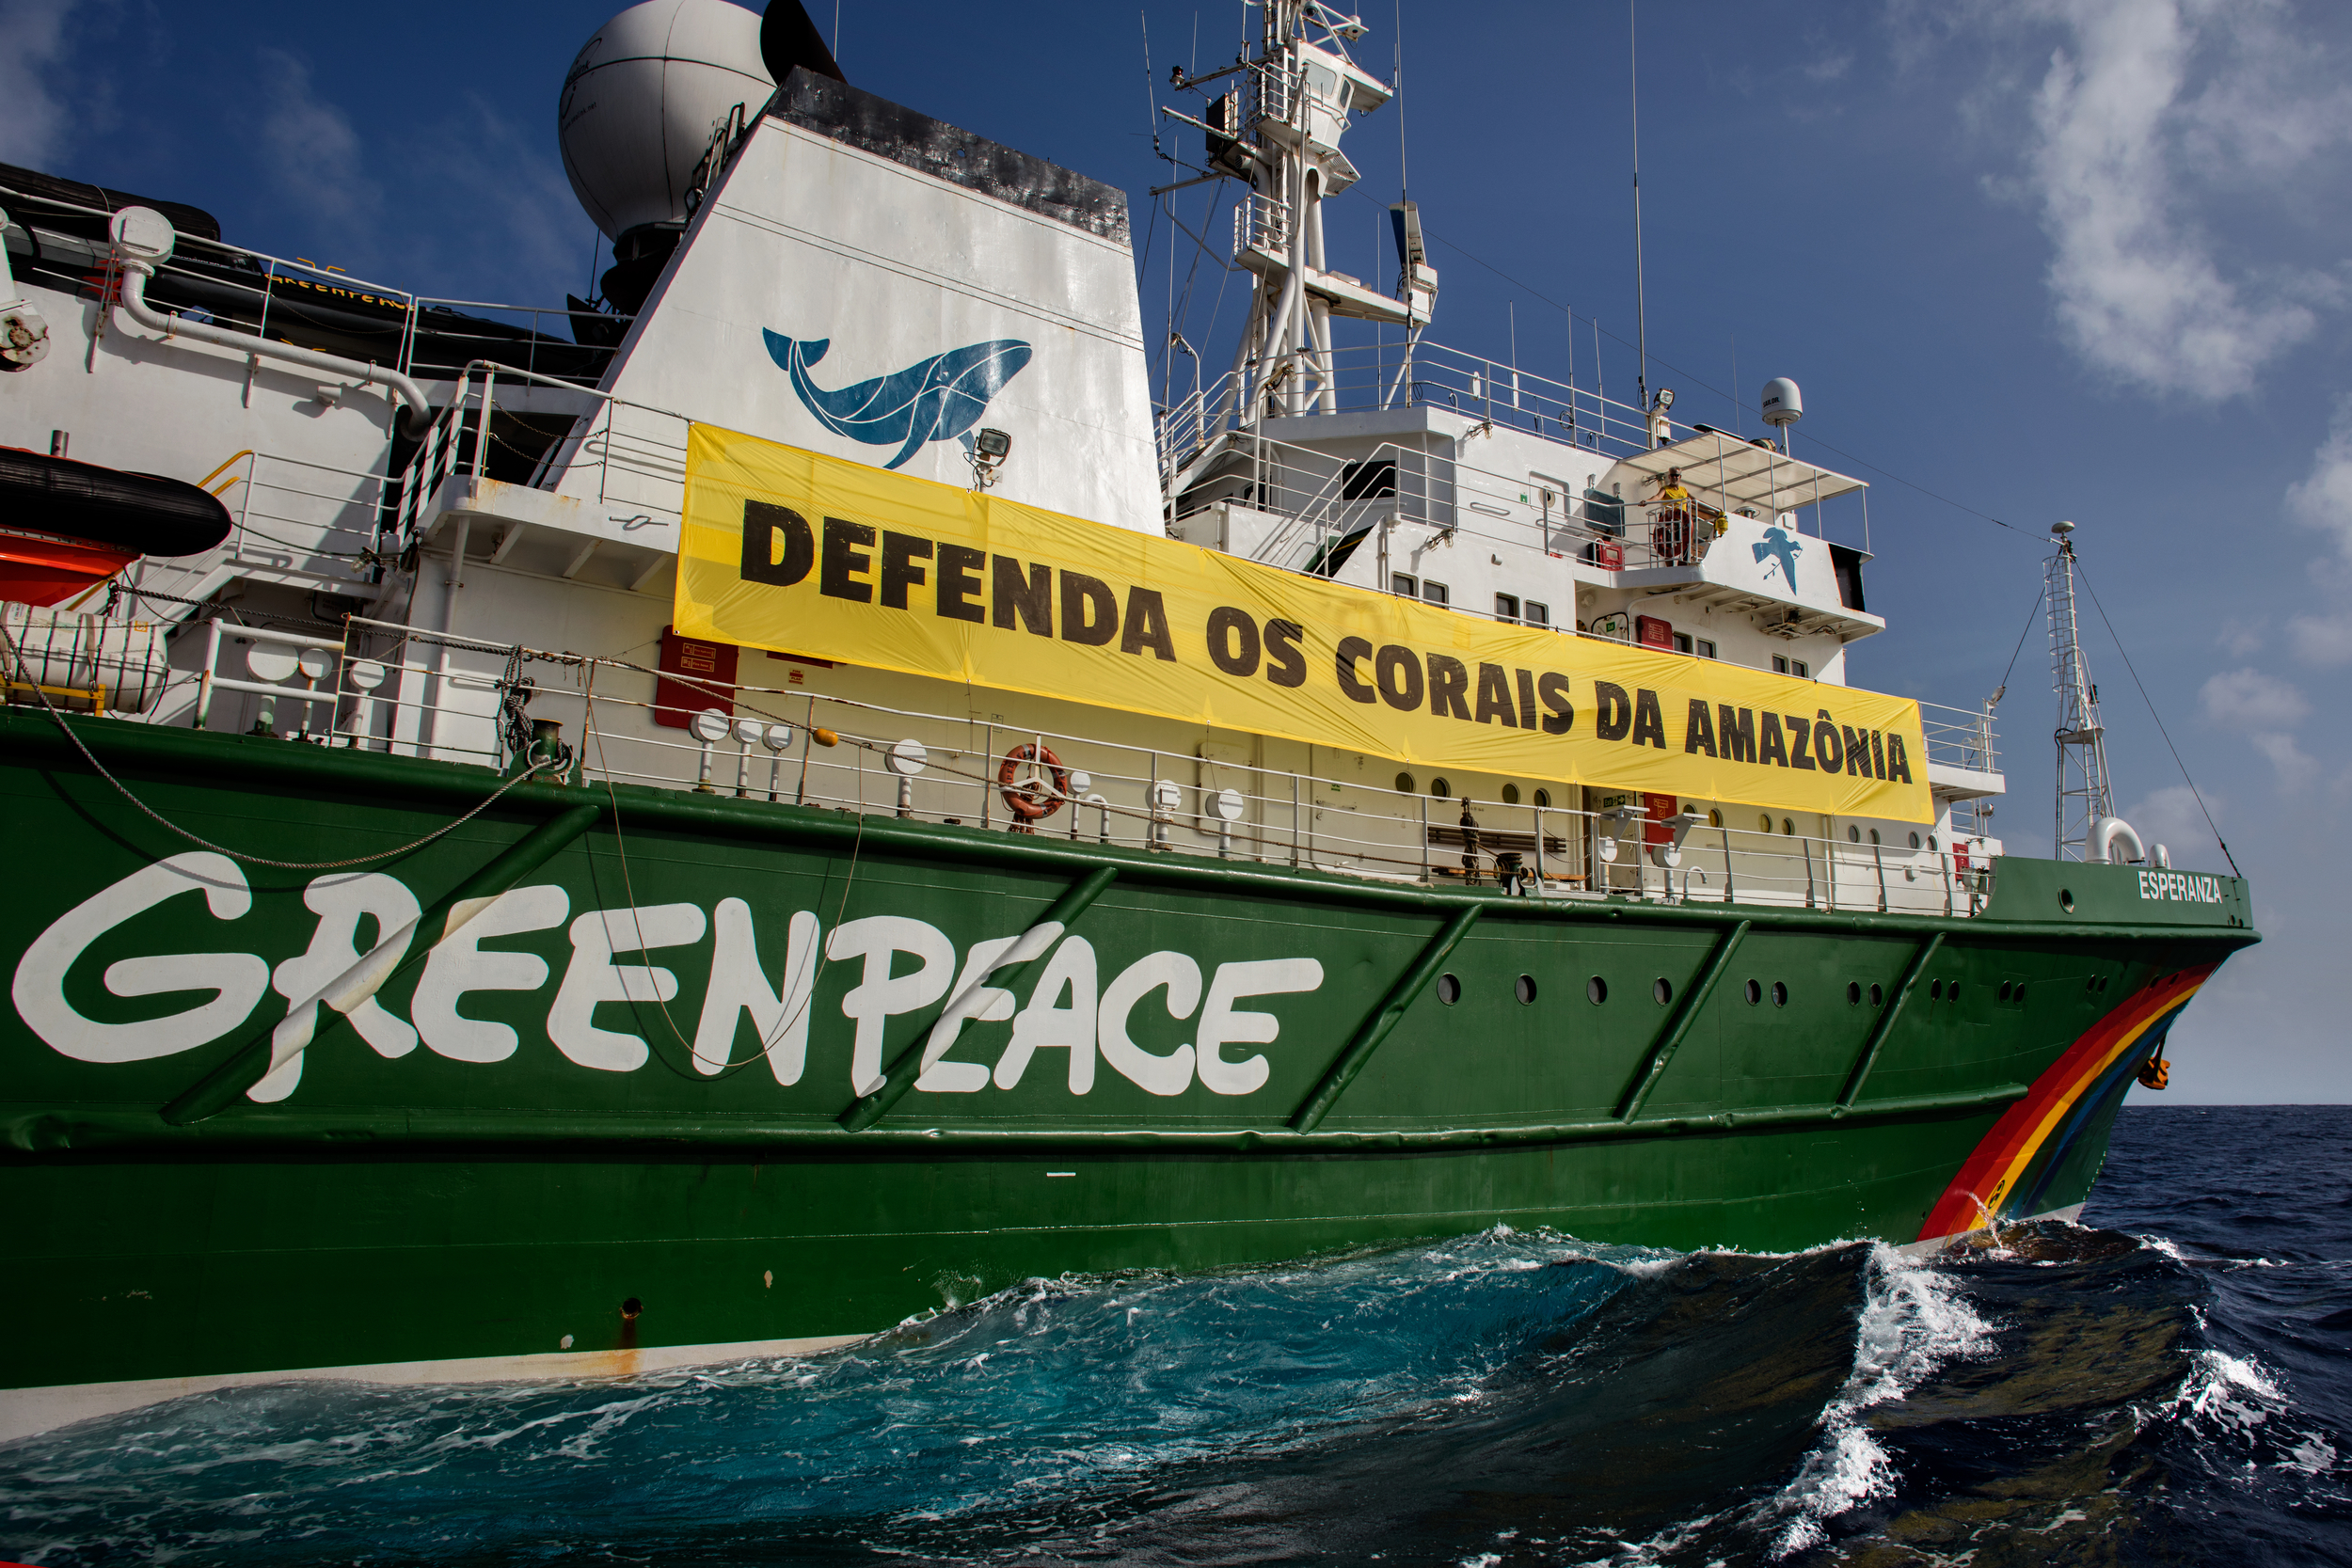 Navio Esperanza com banner Defenda os Corais da Amazônia